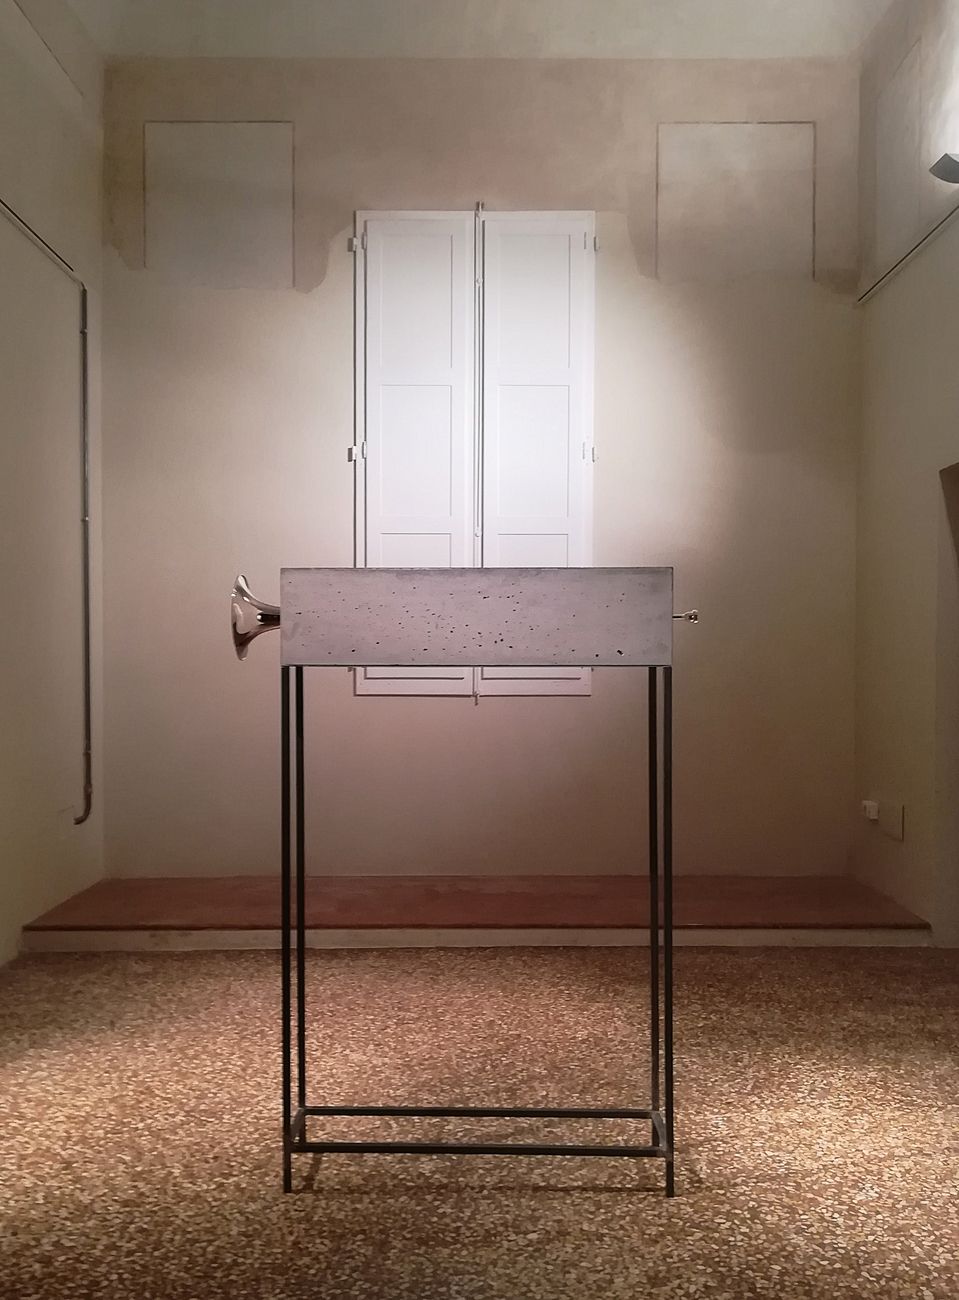 Jacopo Mazzonelli, Volume, 2018. Courtesy Galleria Giovanni Bonelli, Milano